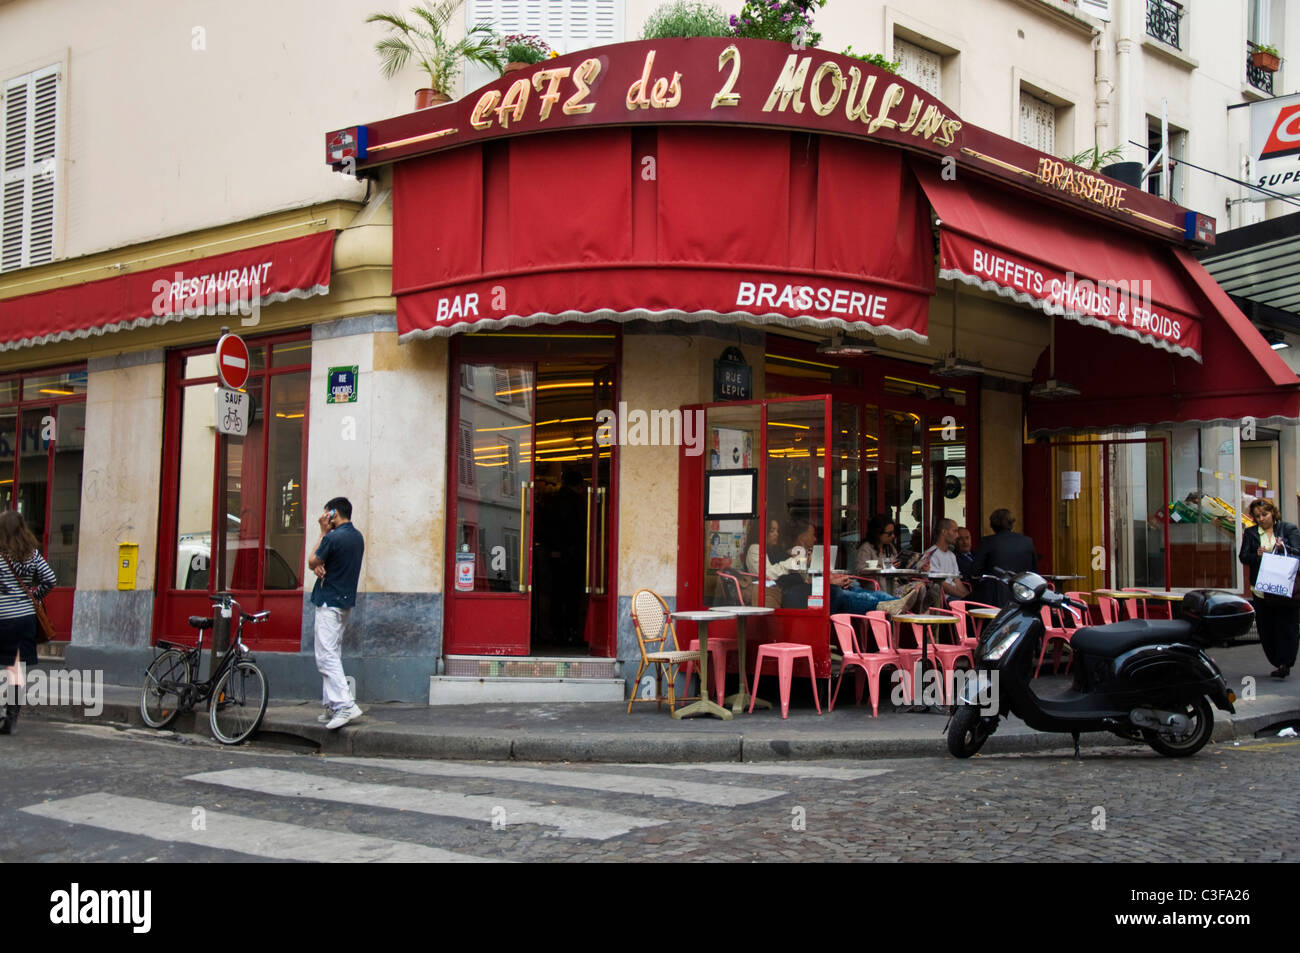 Des Deux Moulins cafe bar tabac presenti nel film Amelie Rue Lepic 18e Montmartre Parigi Francia Foto Stock